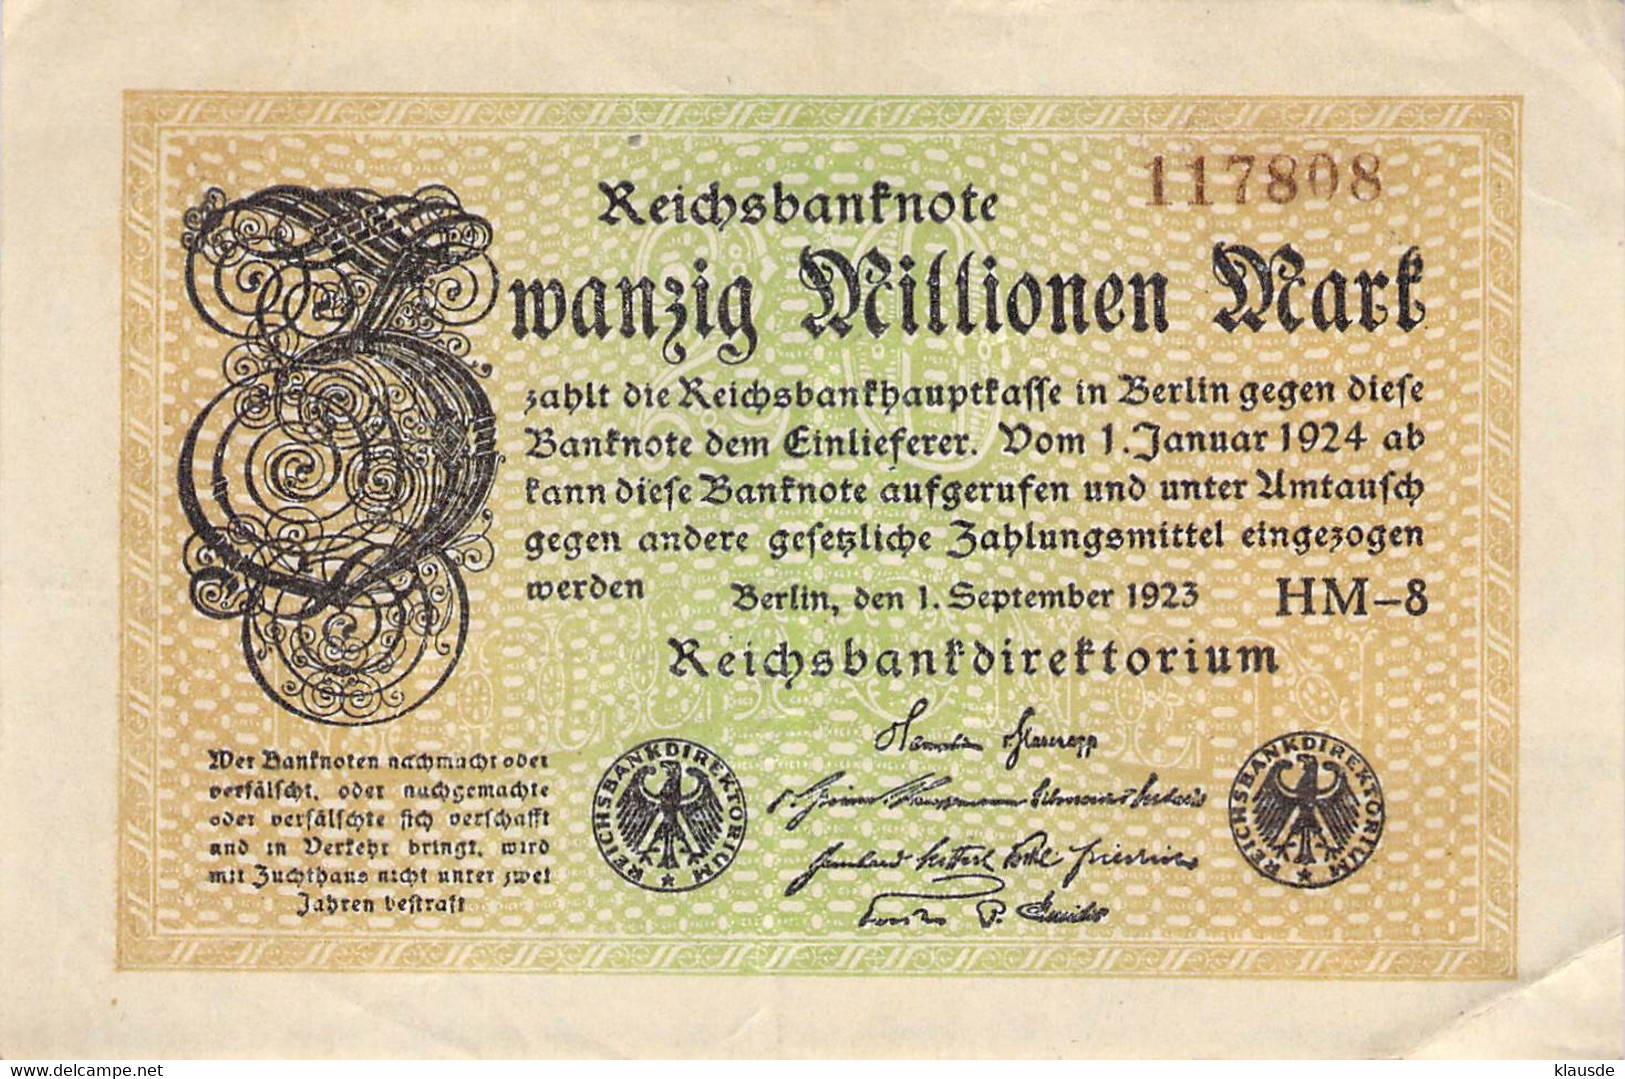 20 Mio Mark Reichsbanknote VF/F (III) - 20 Mio. Mark